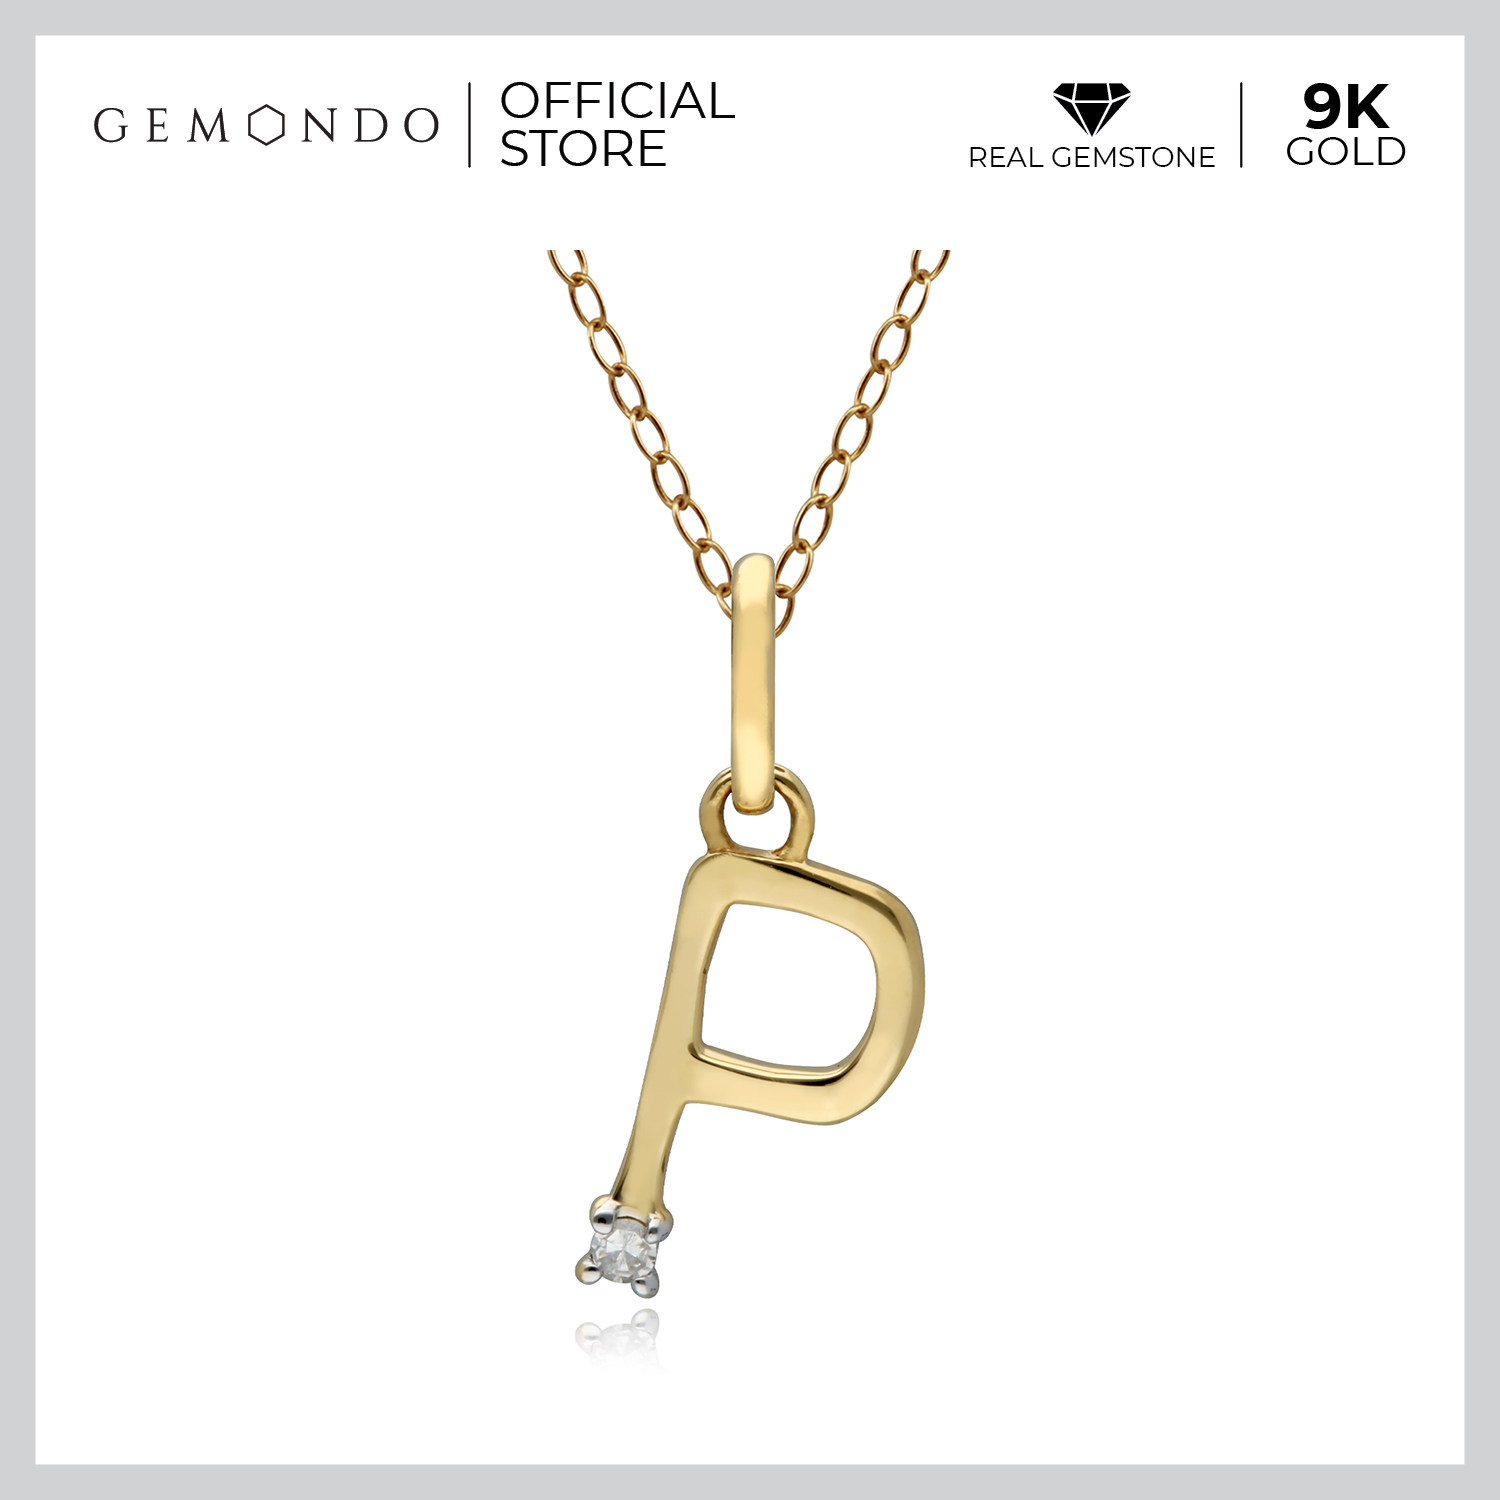 Gemondo จี้ทองคำแท้ 9 กะรัต (9K) ตัวอักษร P ประดับเพชรแท้ : จี้ตัวอักษร จี้ทองแท้ จี้ทอง